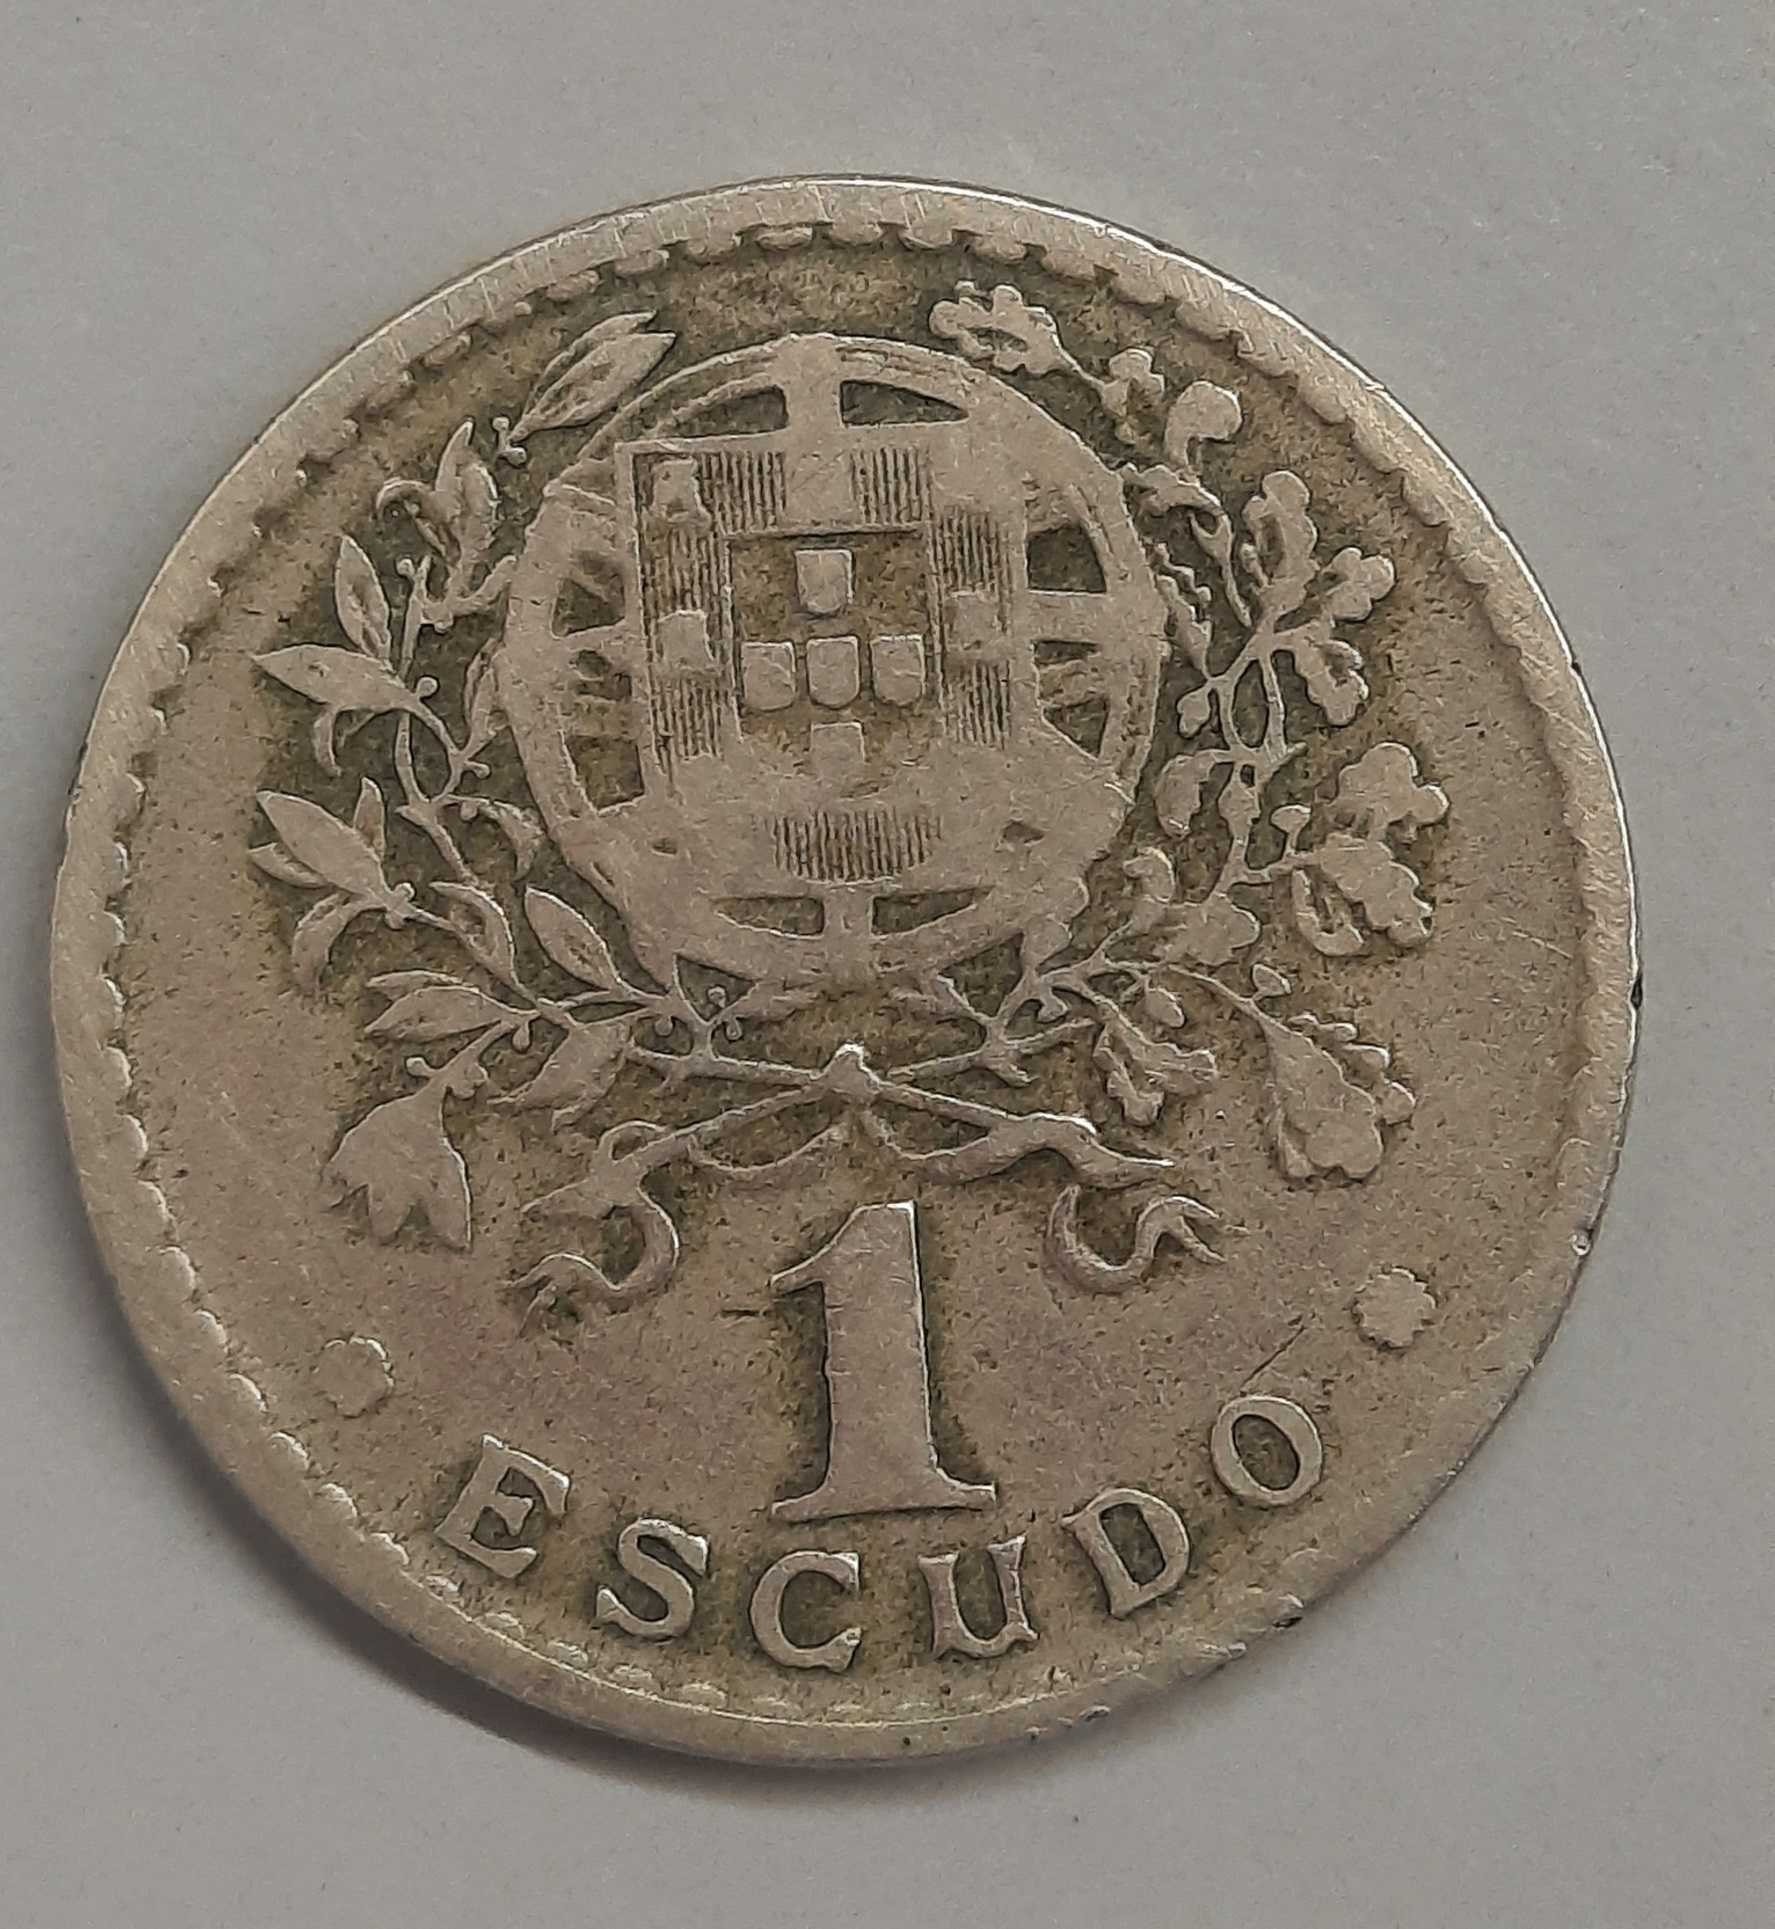 Moedas 1 escudo da República Portuguesa